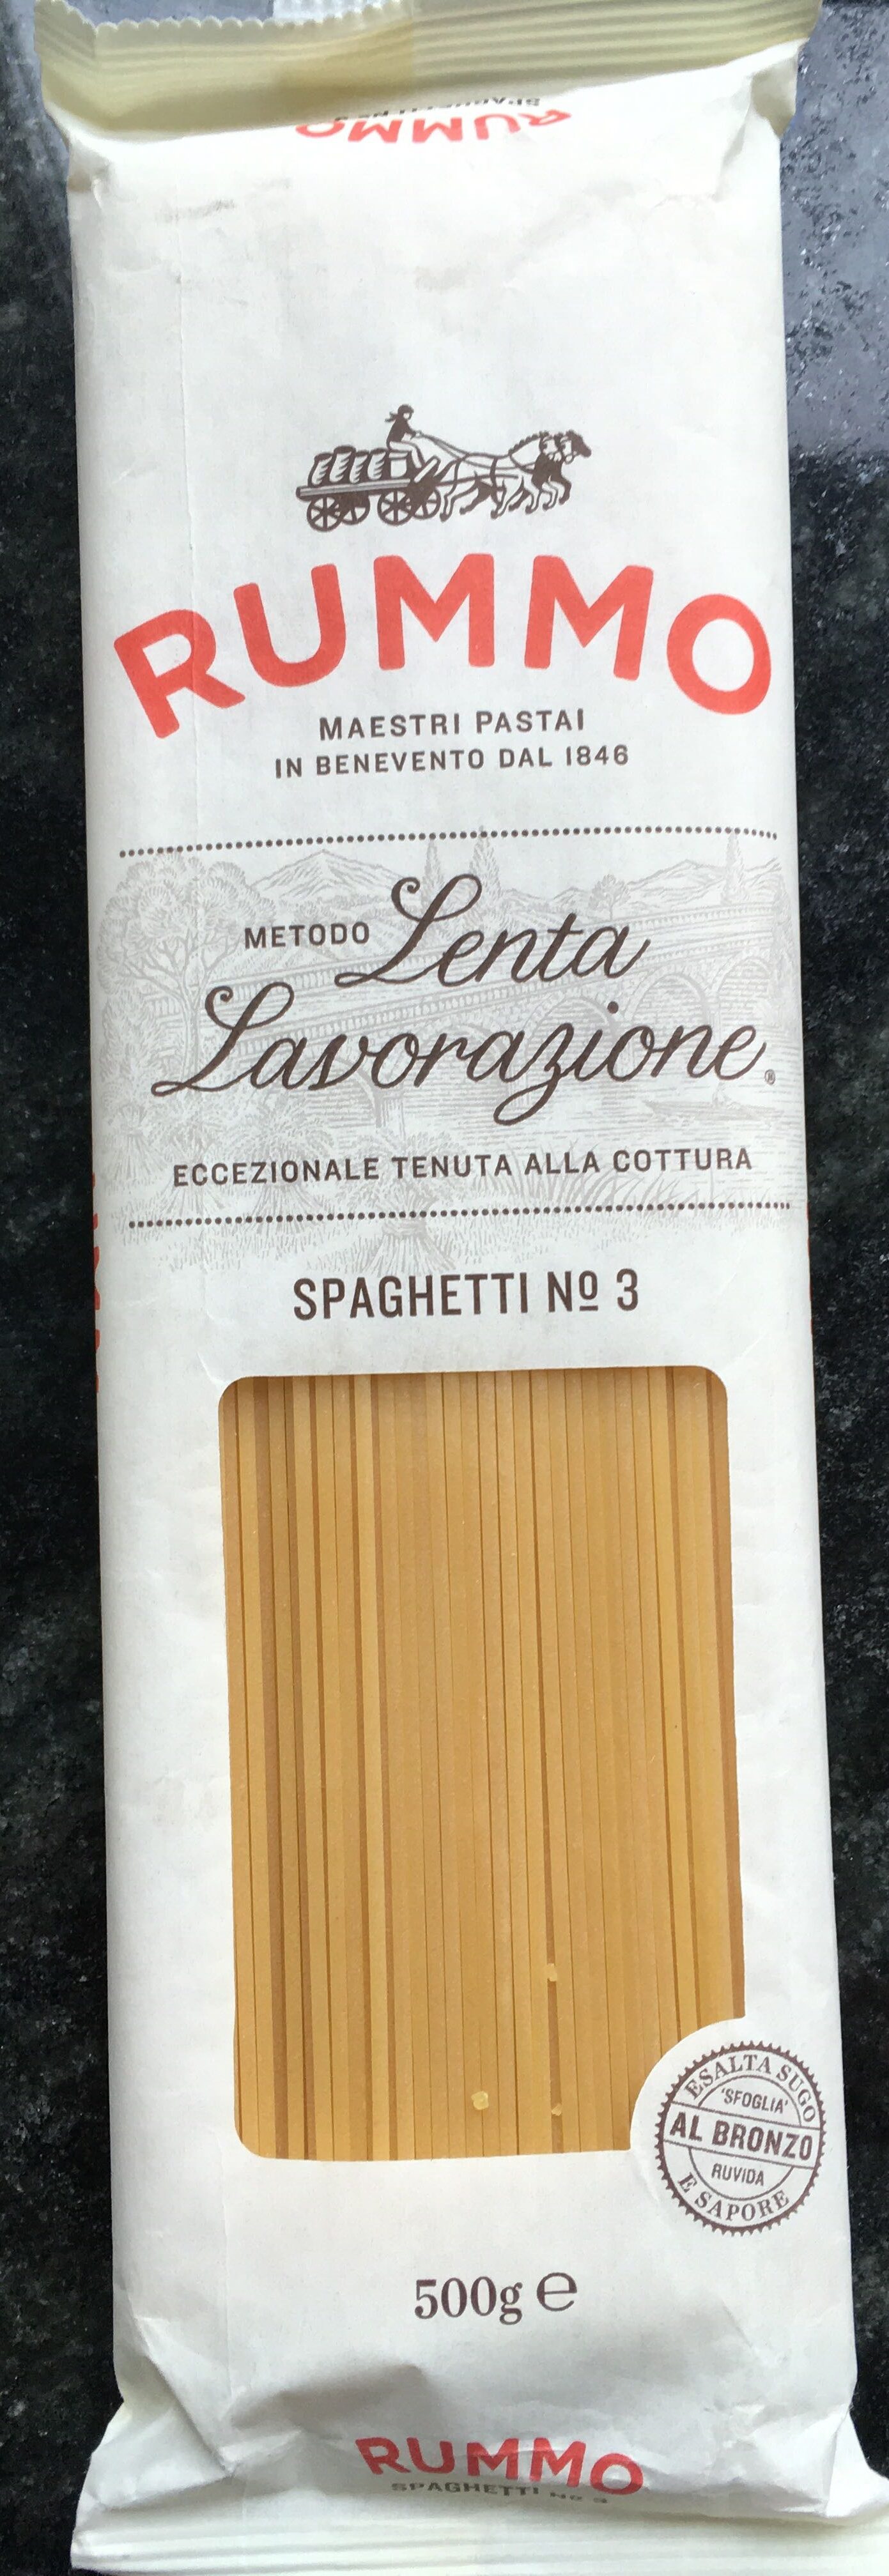 Spaghetti No 3 - Prodotto - fr